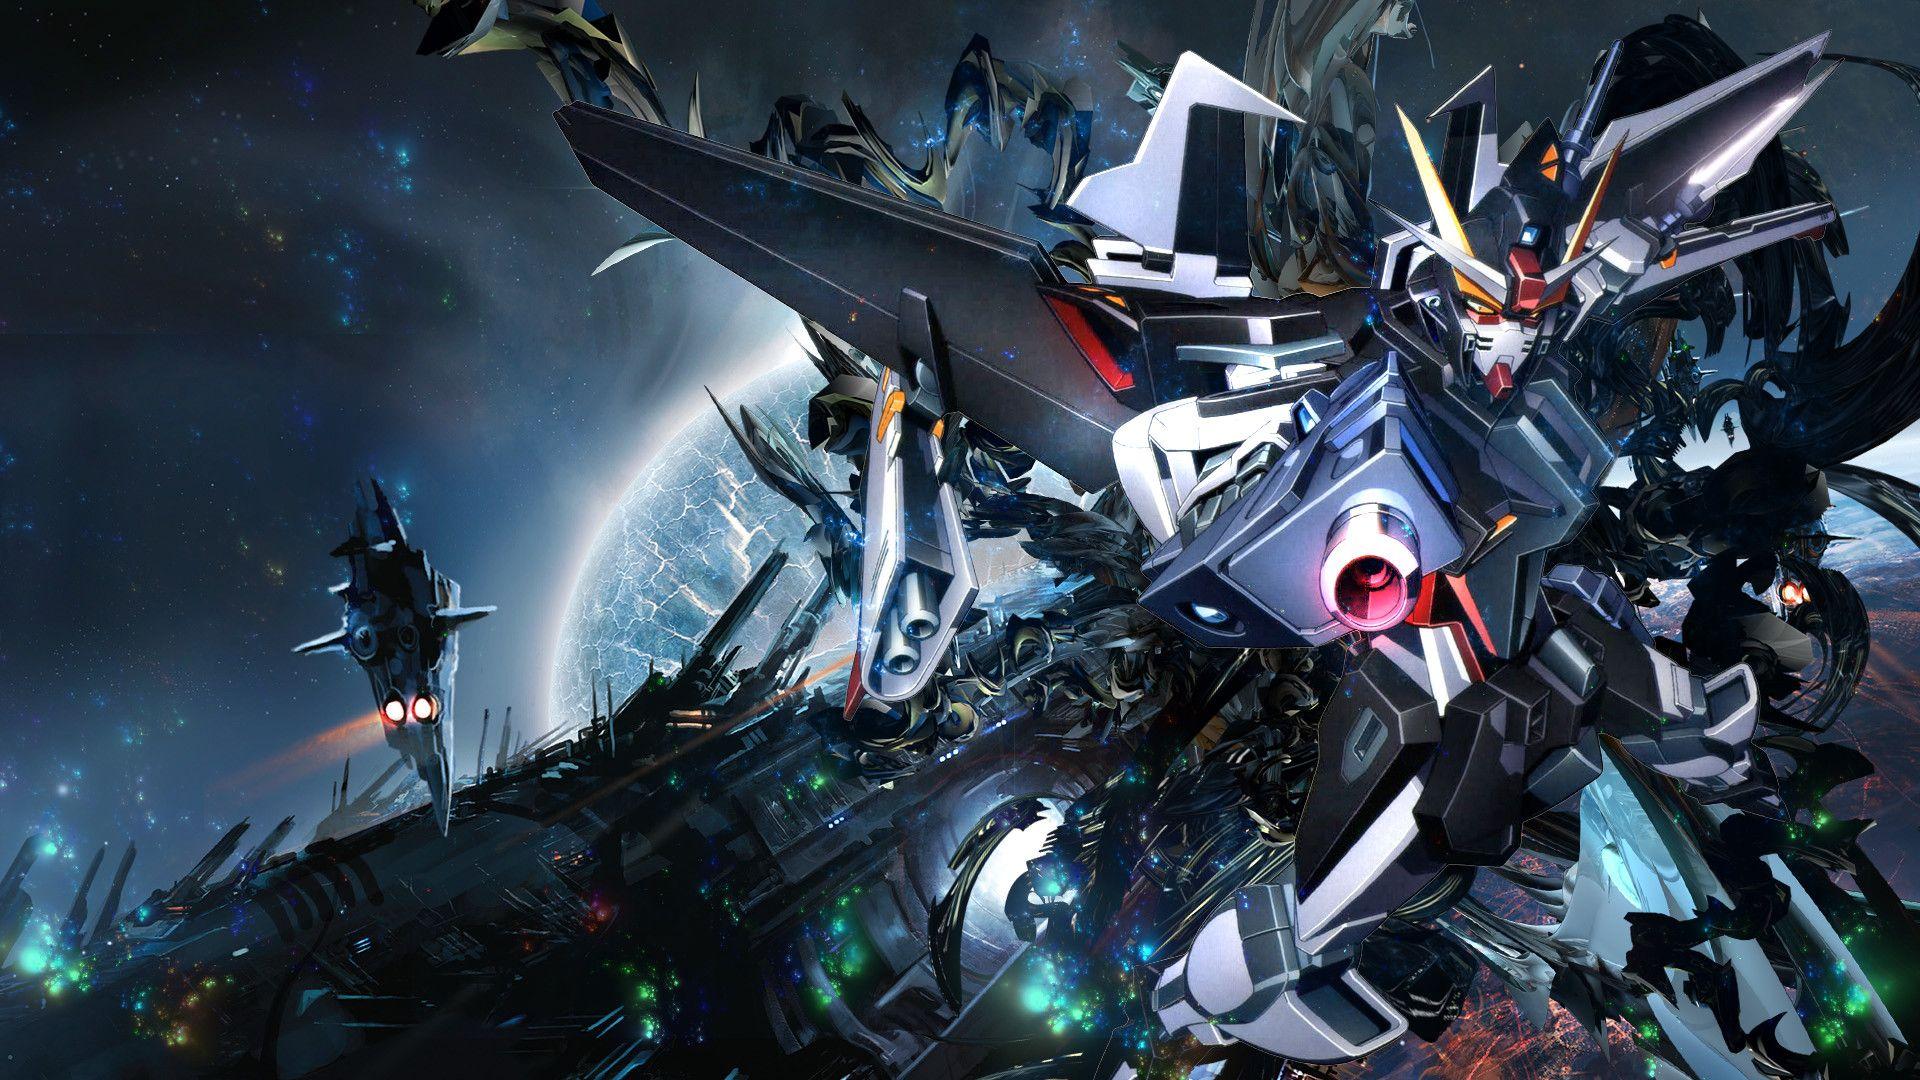 Gundam Hd Wallpapers Top Free Gundam Hd Backgrounds Wallpaperaccess